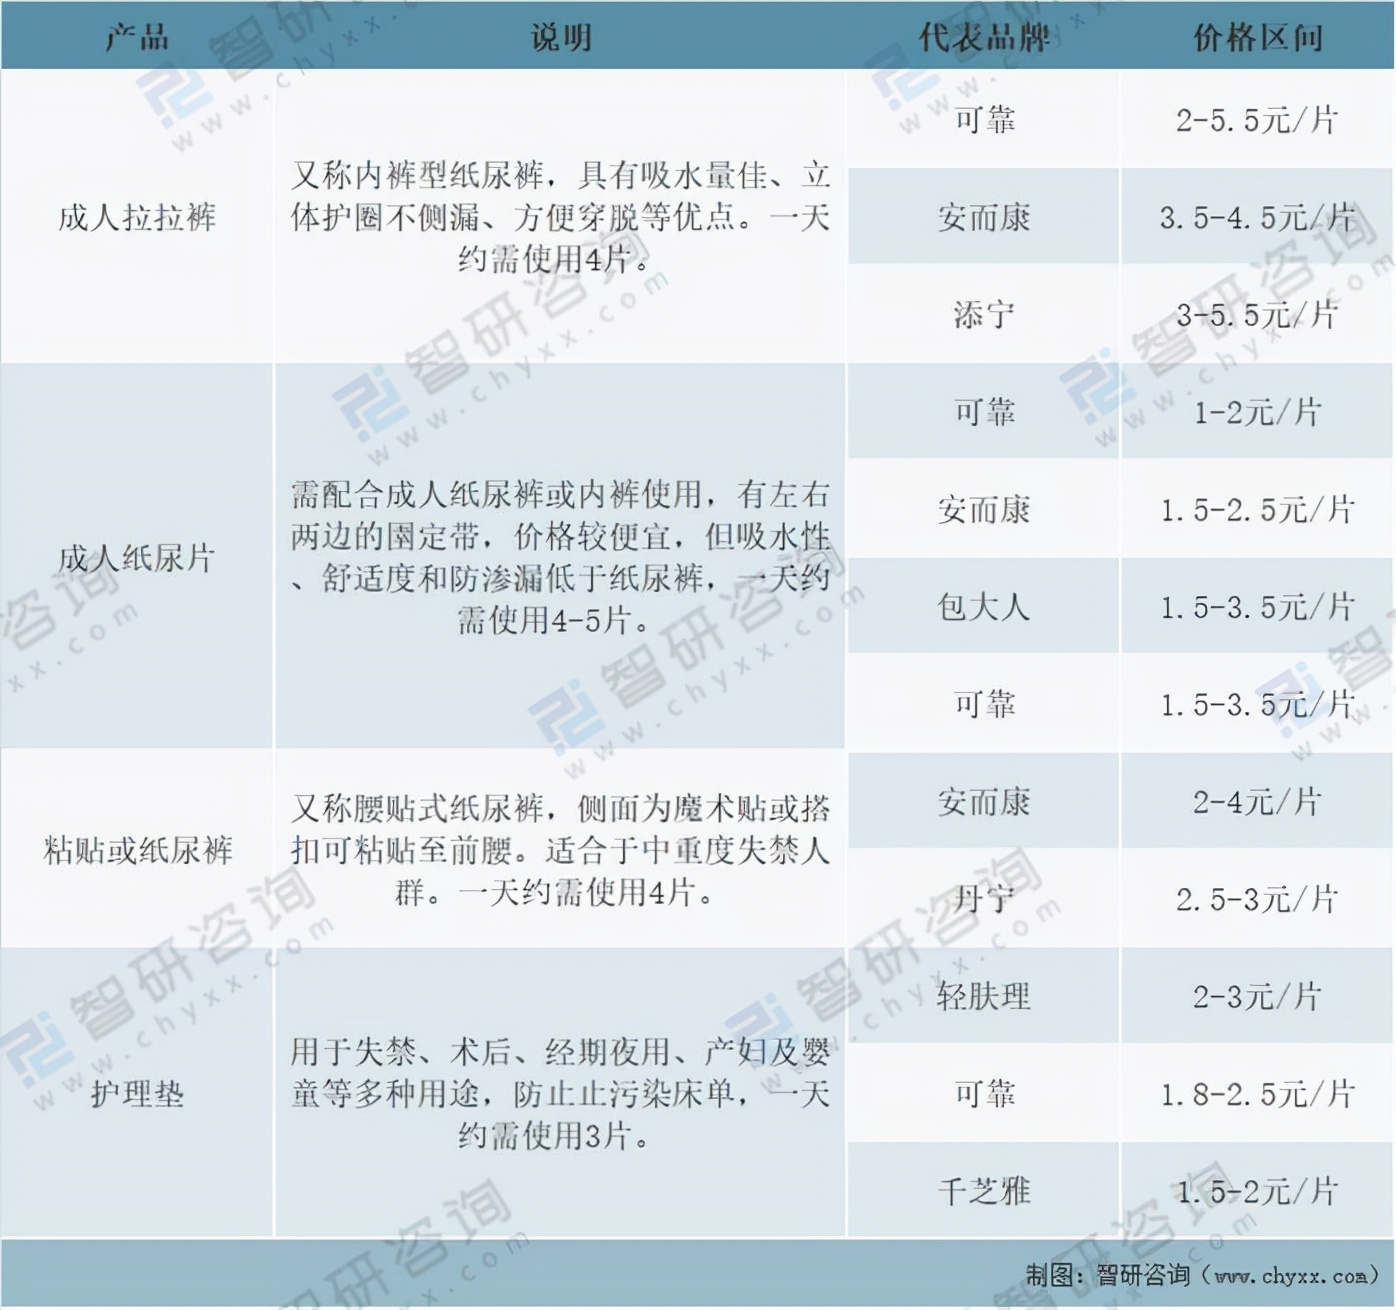 中国成人失禁用品行业市场规模及市场格局分析「图」